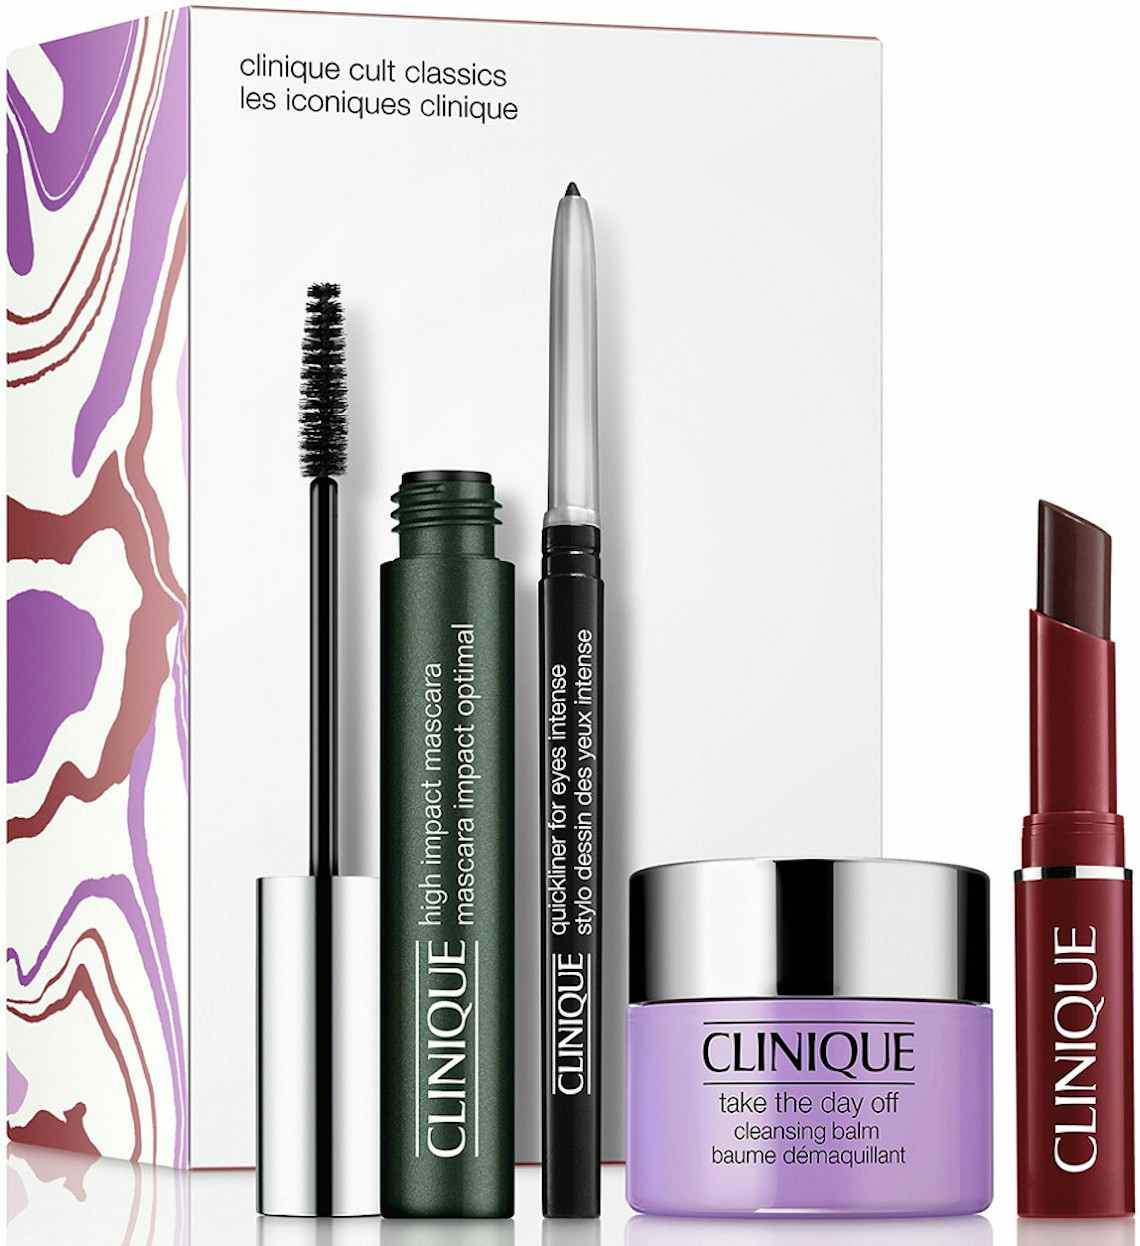 Stock photo of Clinique makeup set